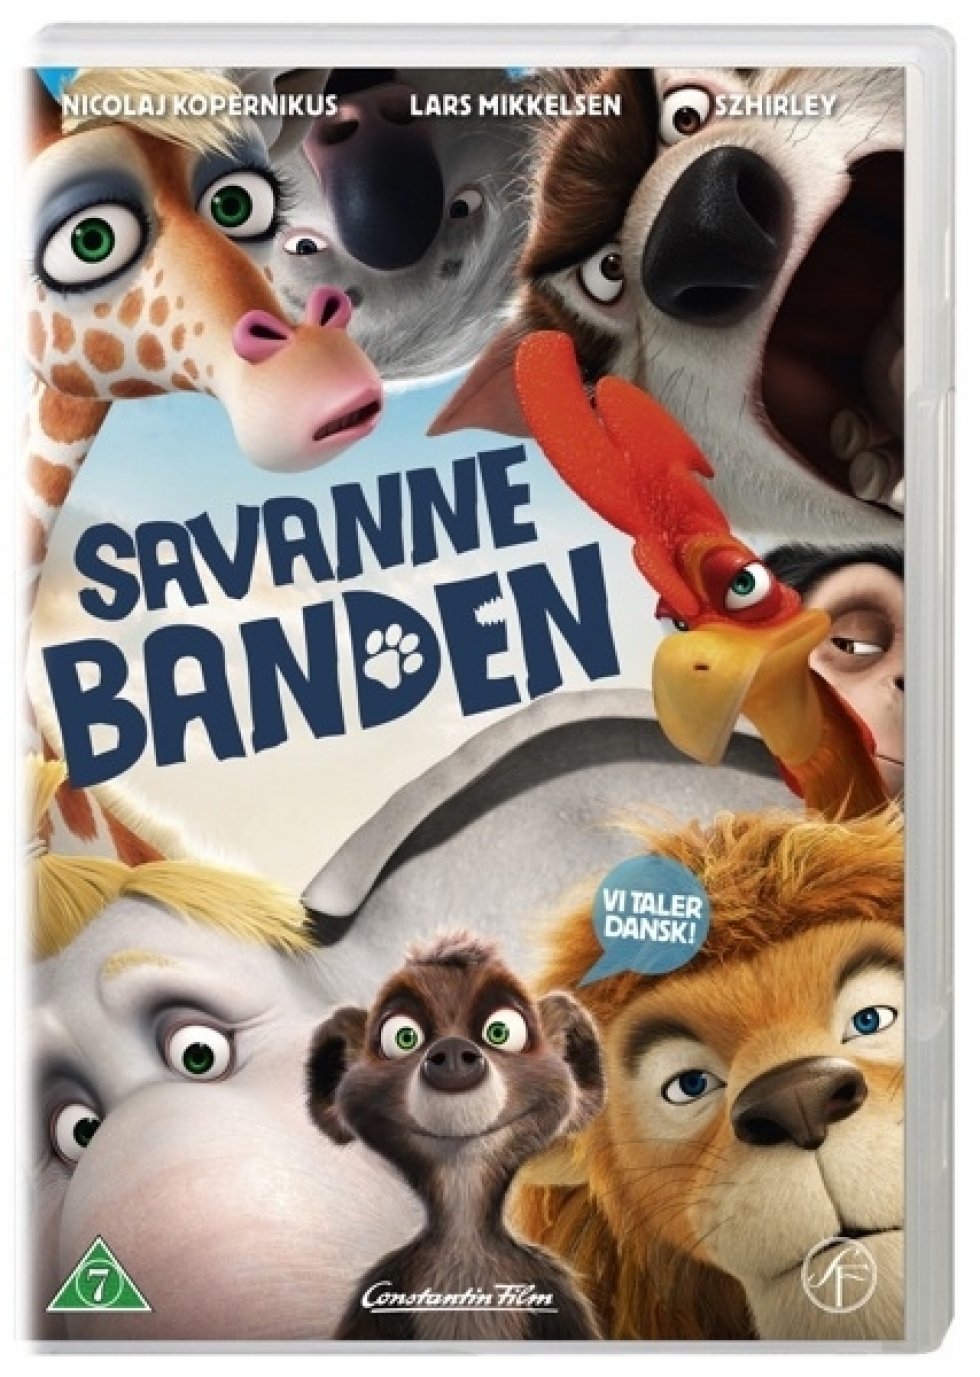 Dvd: Savanne Banden